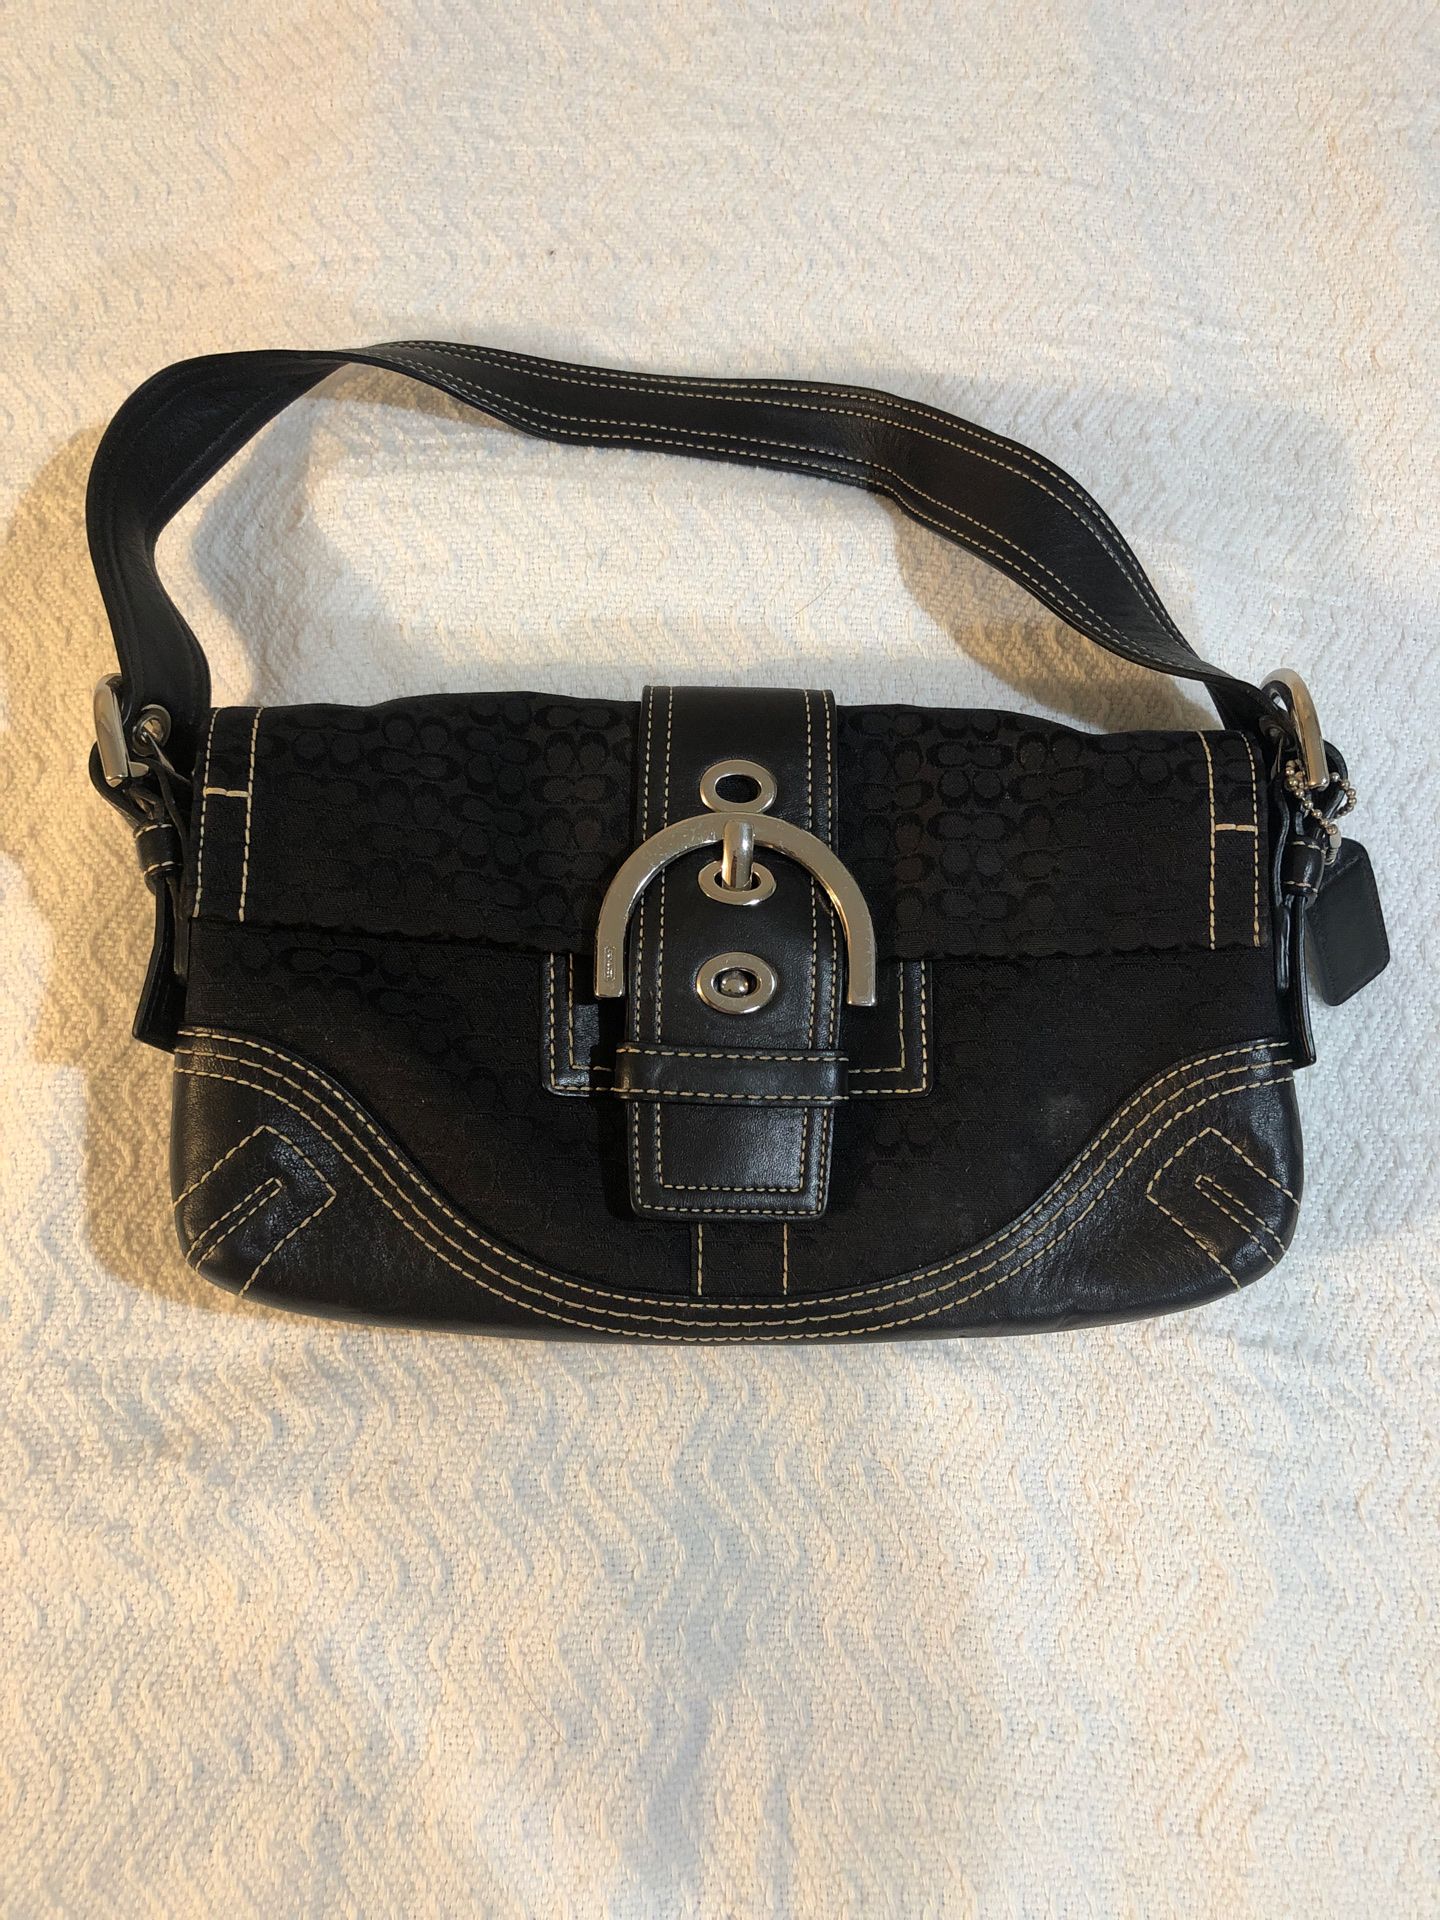 Black Coach purse really good condition